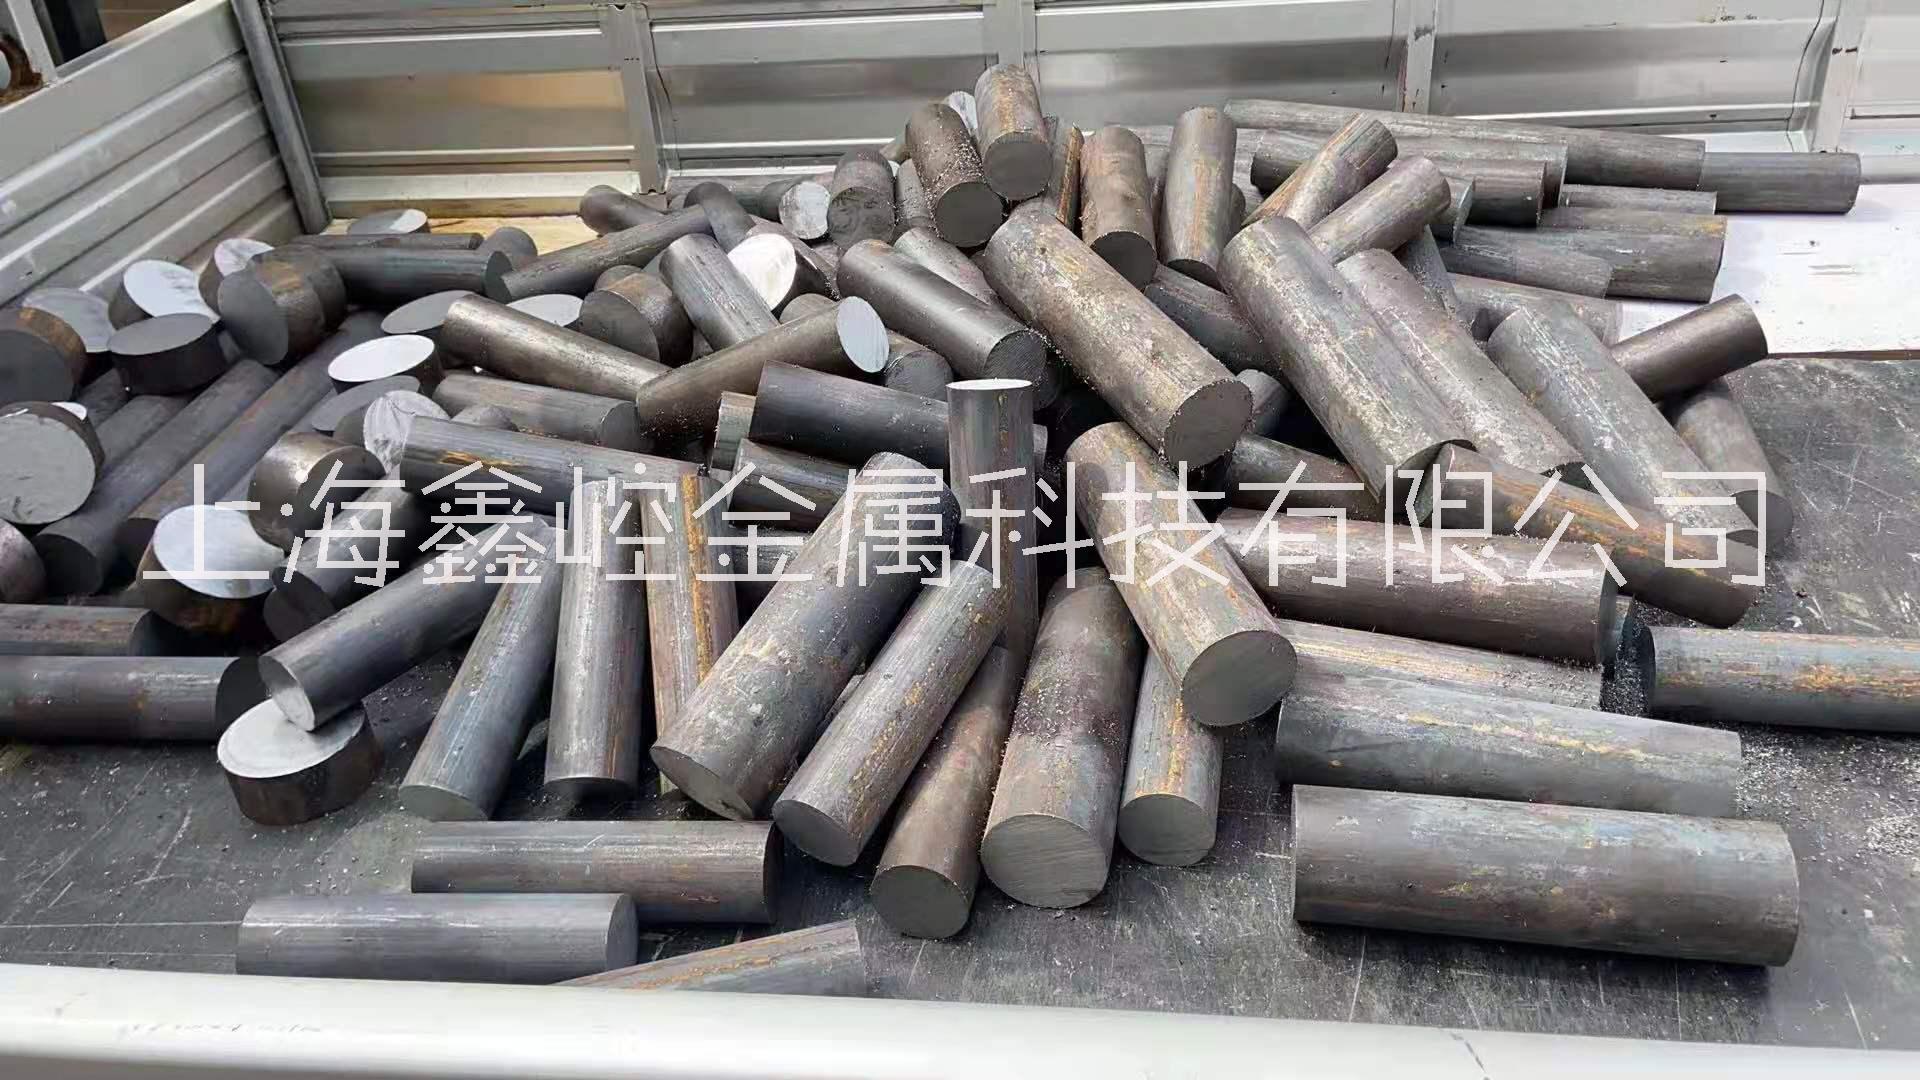 上海厂家批发零售各类模具材料 模具加工 模具定制 工具钢高速钢定制